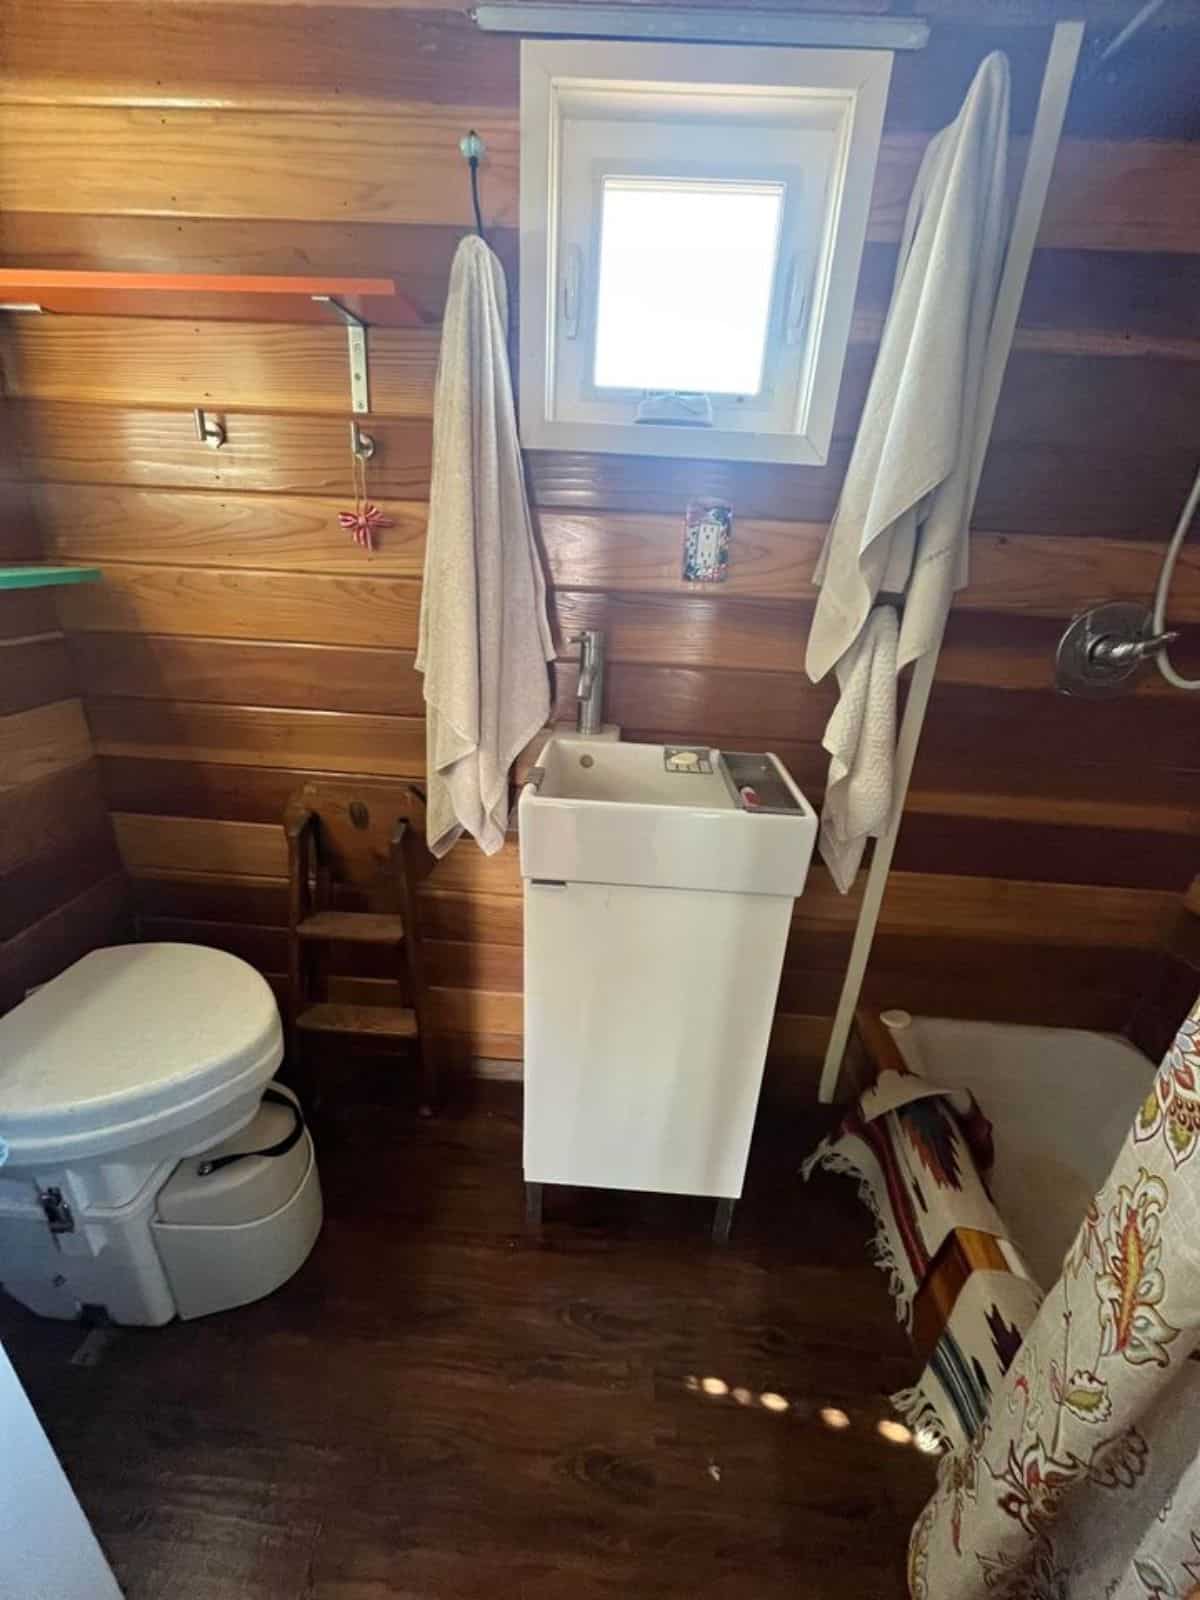 sink with vanity in bathroom of custom mobile home